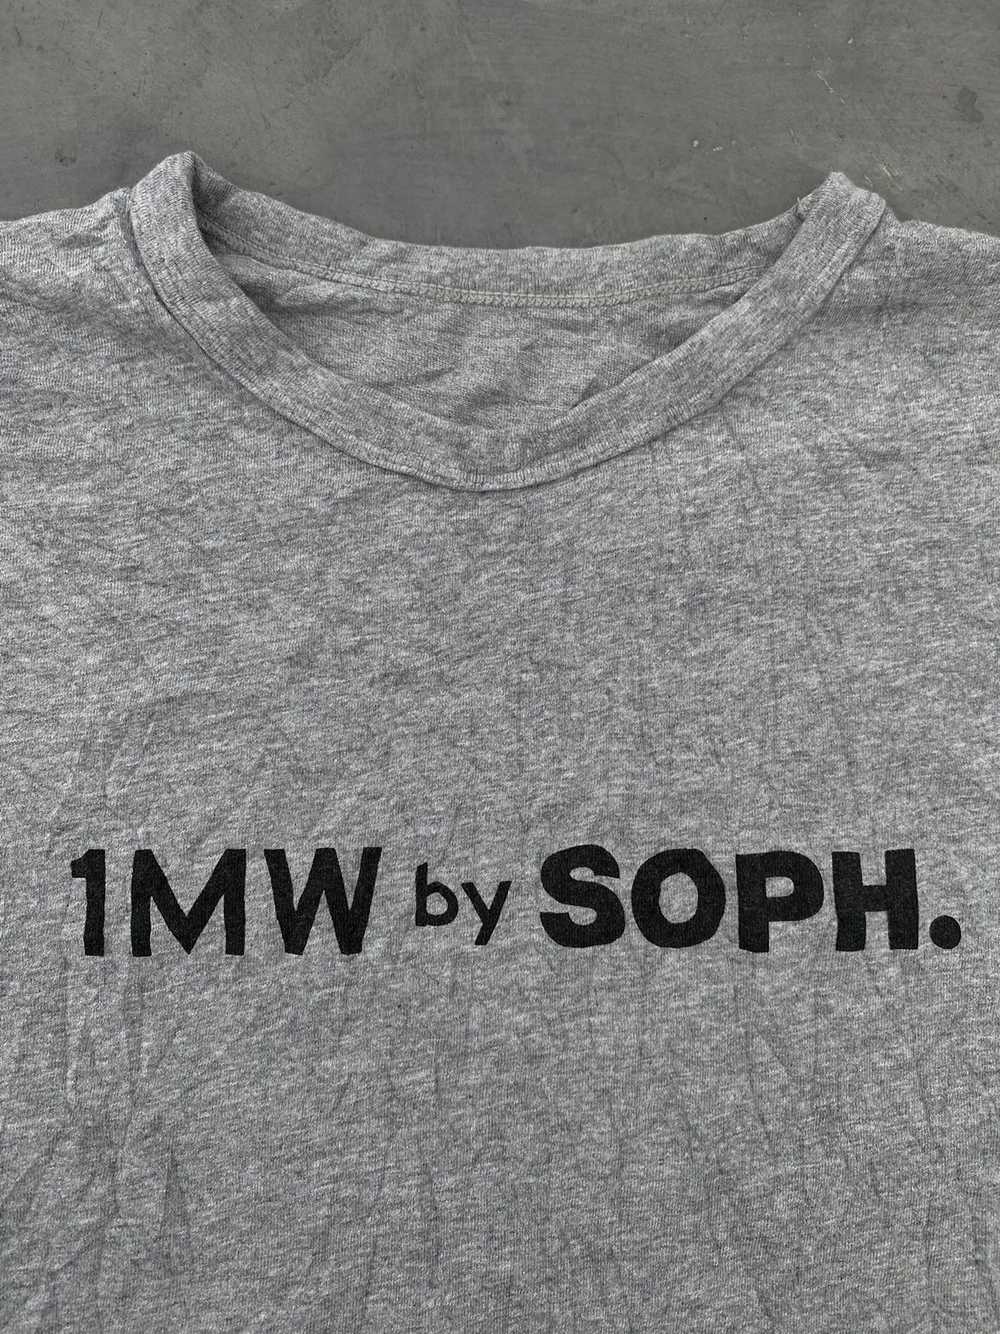 GU × Sophnet. 1MW By Soph x Gu Tshirt - image 2